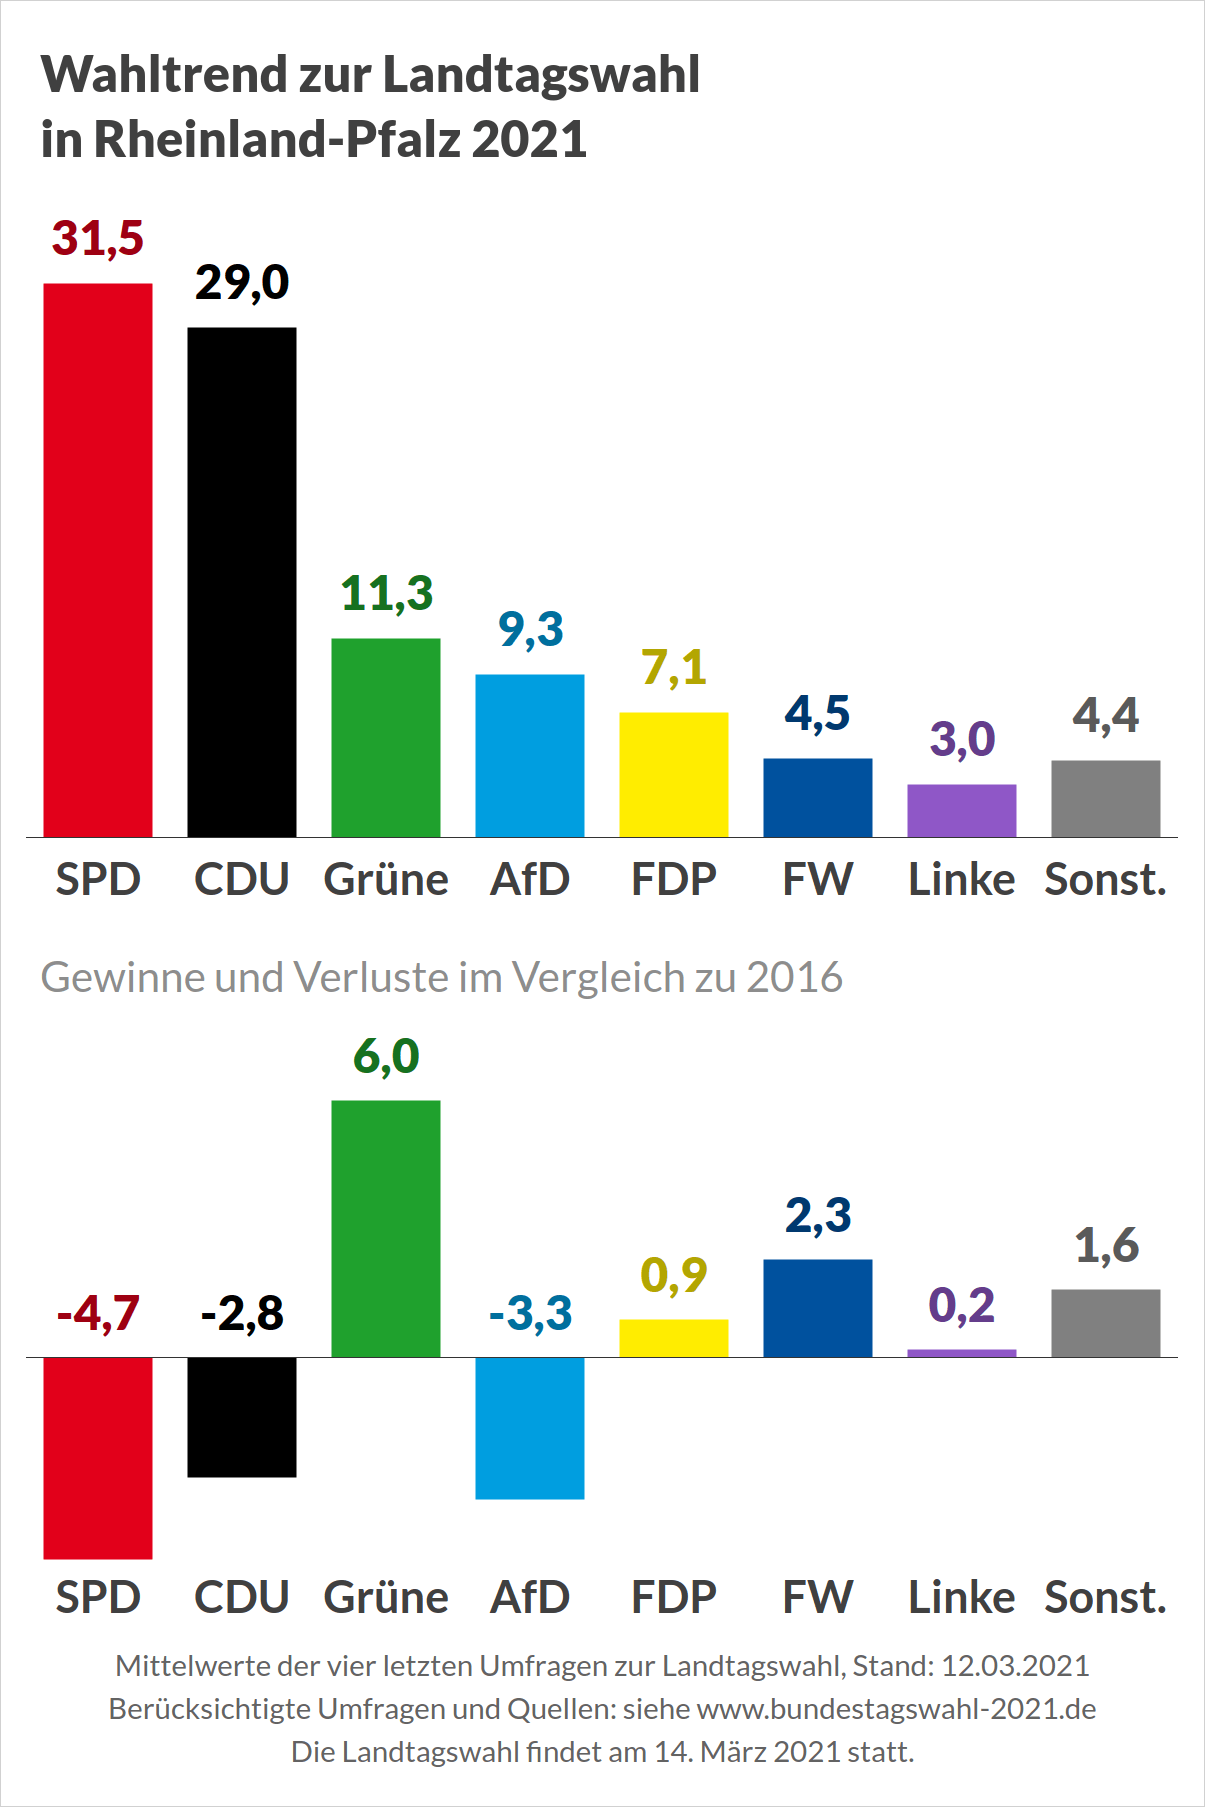 Landtagswahl 2021 in Rheinland-Pfalz - Umfragen (Wahltrend)